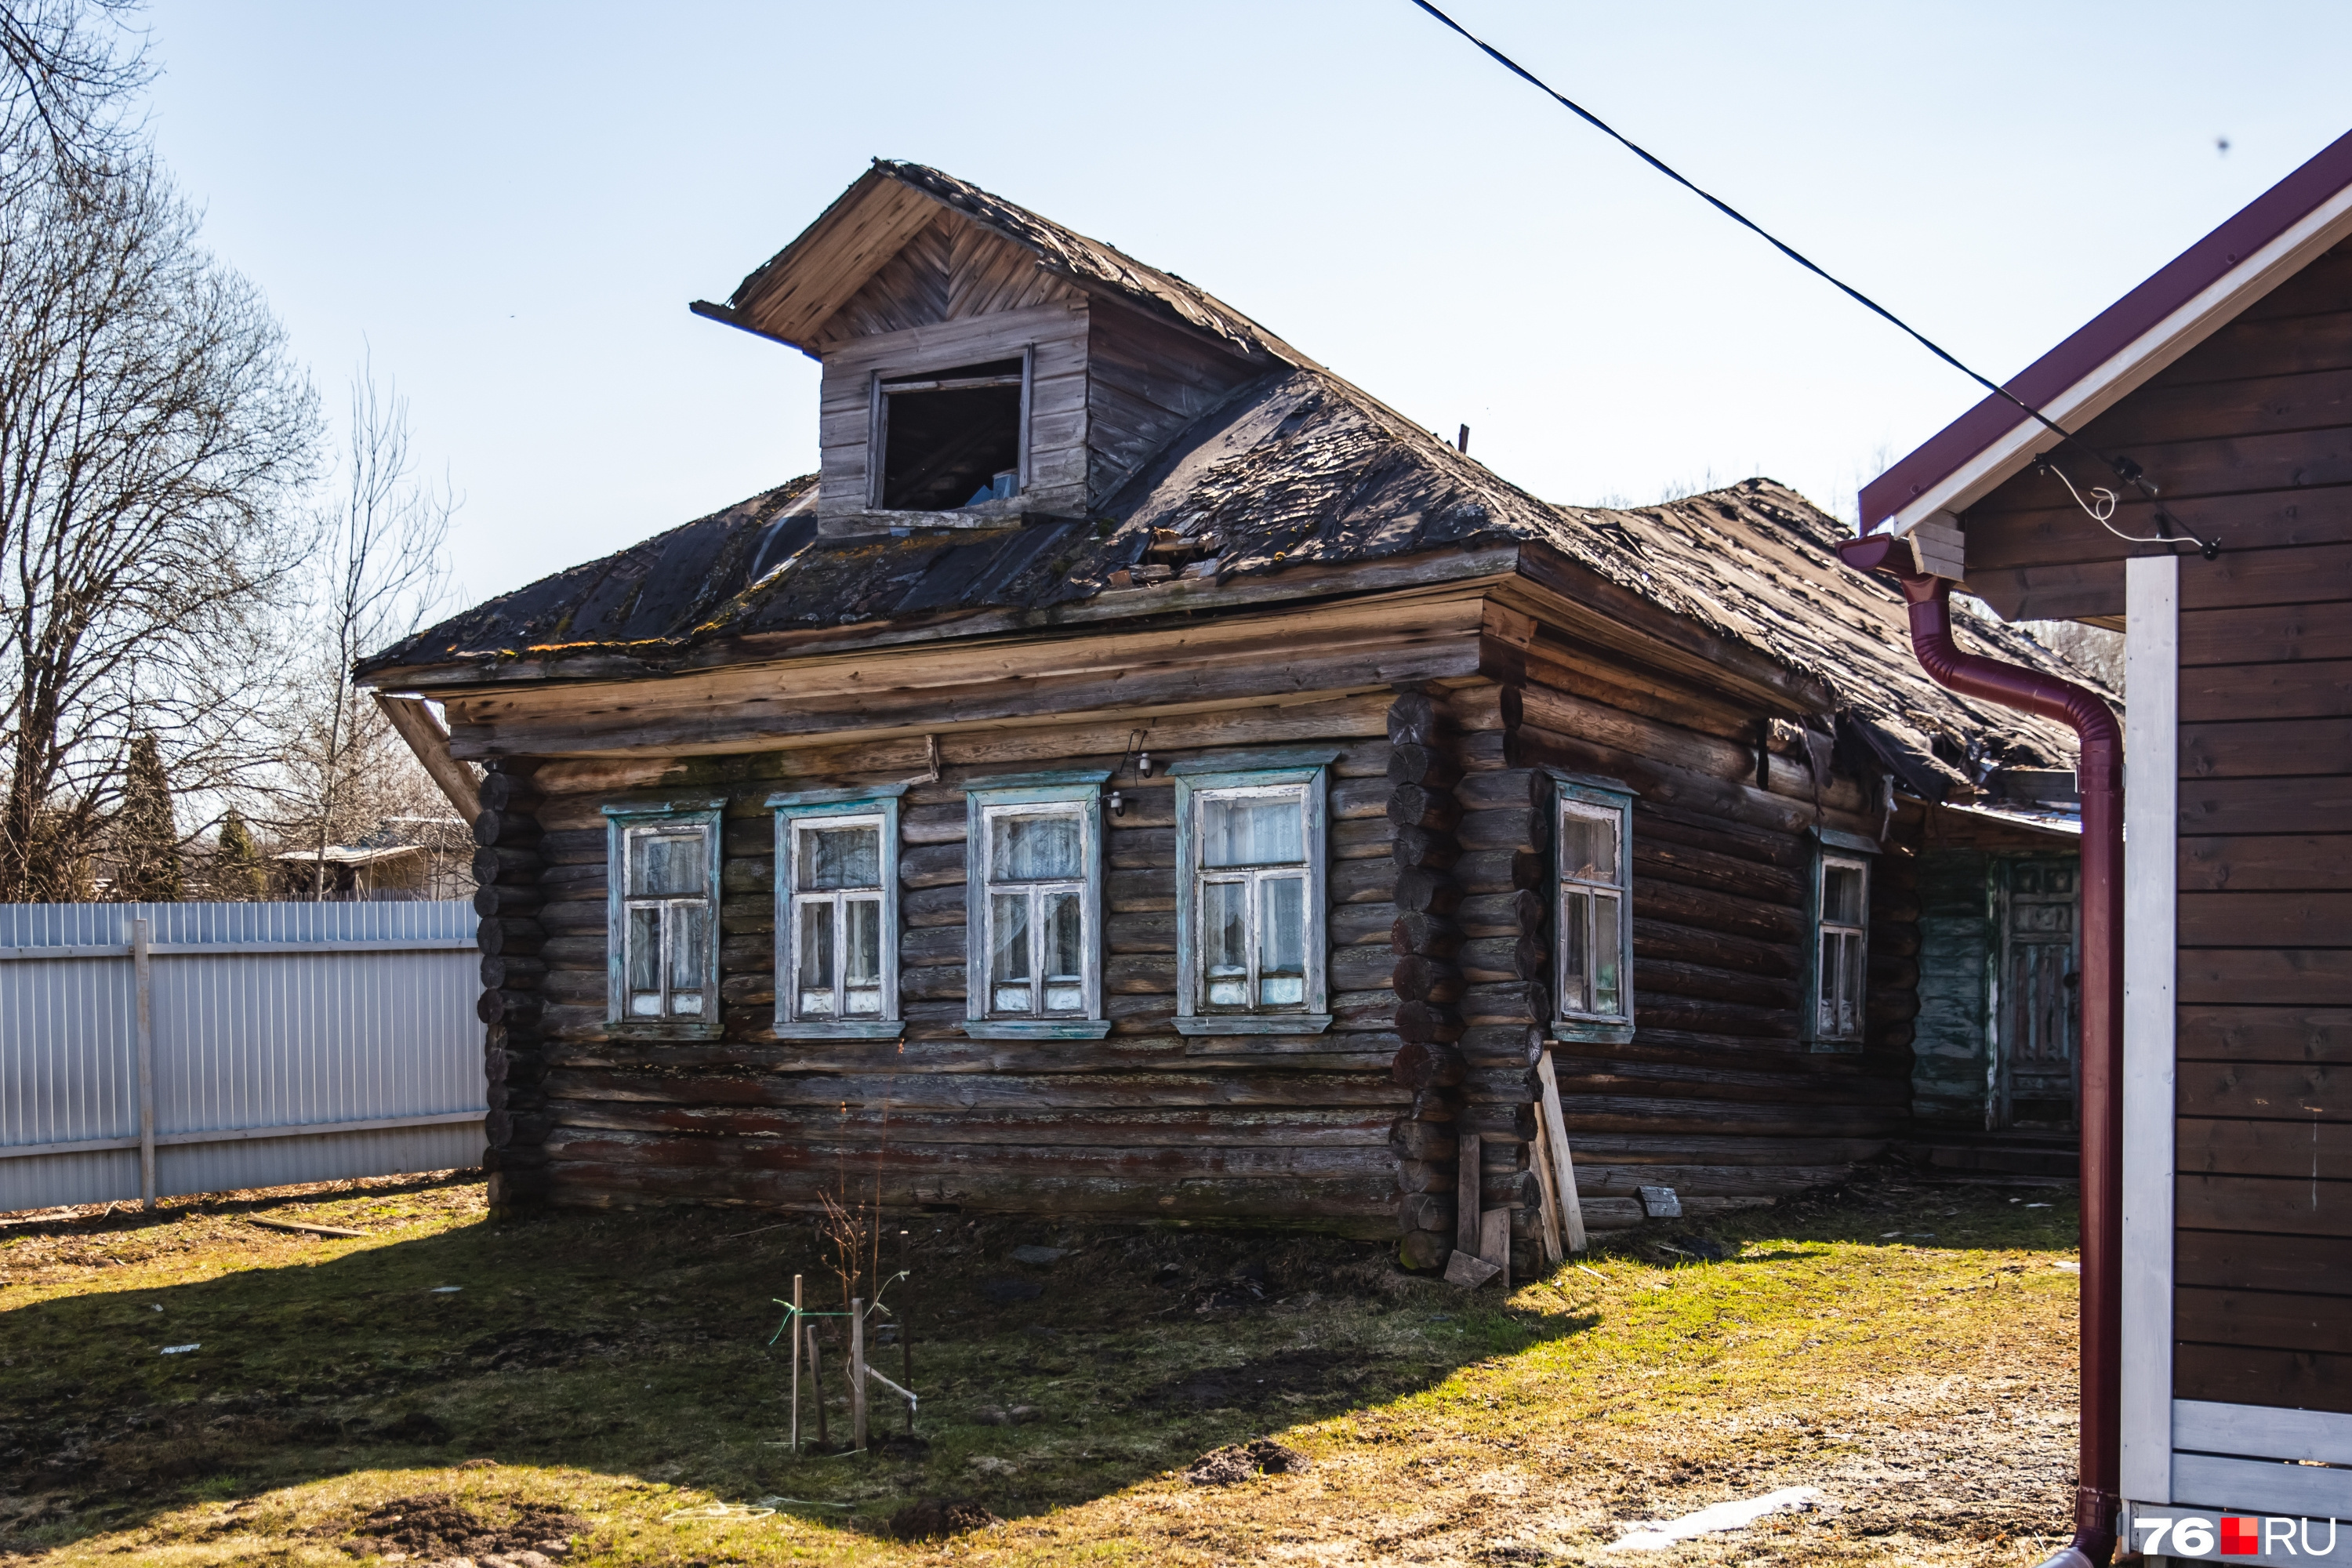 Дом, в котором в детстве жила Валентина Владимировна Терешкова